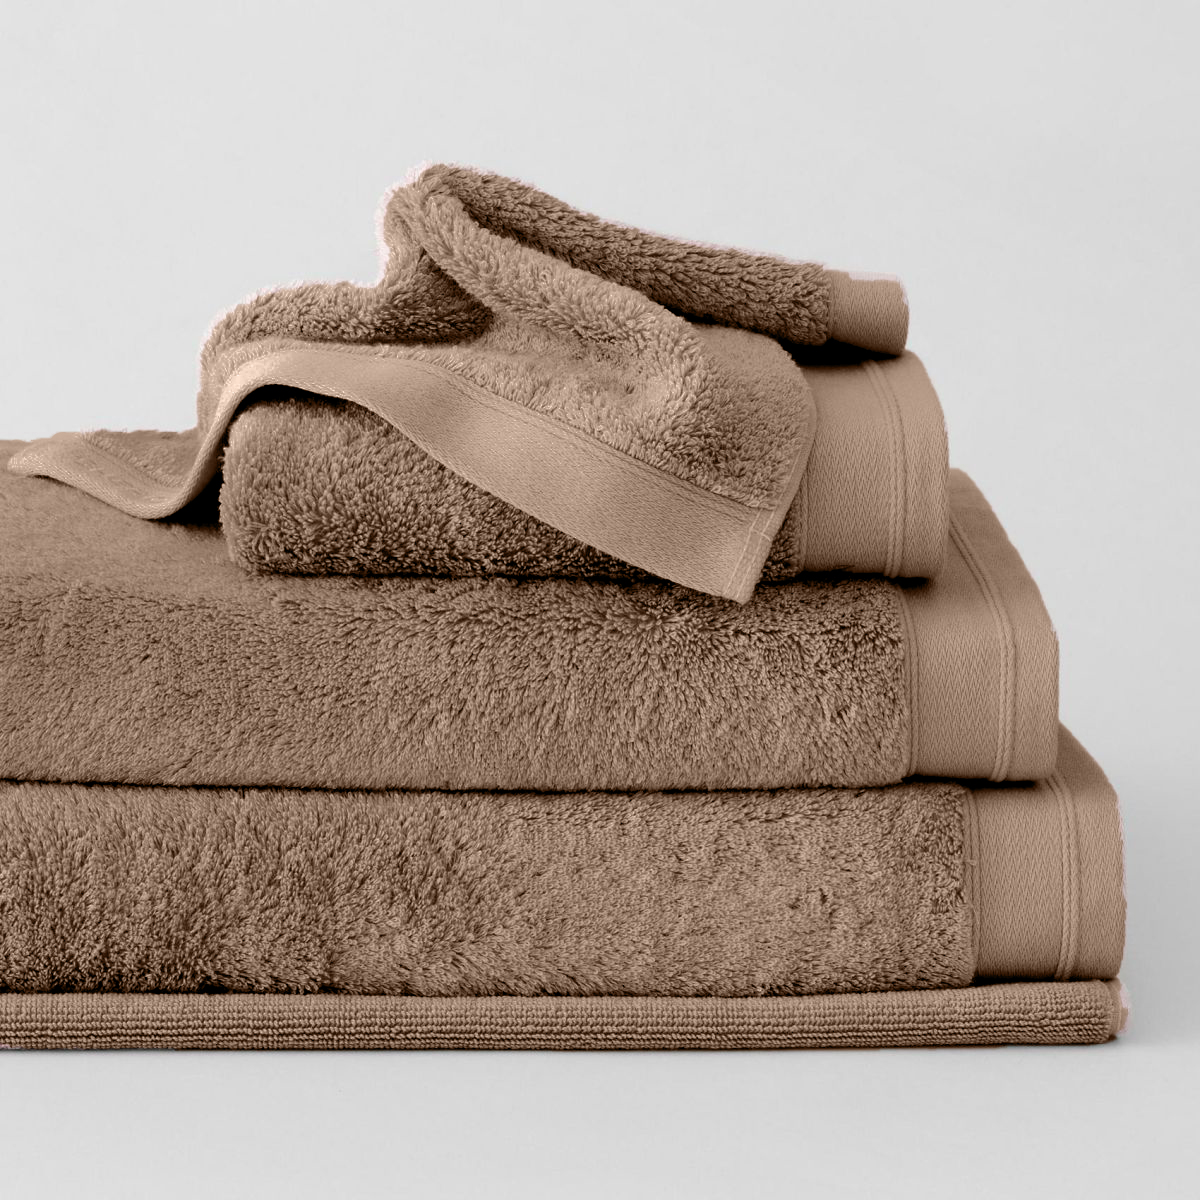 khăn tắm, khăn tay, khăn mặt sang trọng 100% cotton hữu cơ Homemark 500GSM mềm mại và khả năng thấm hút cao, nhanh khô